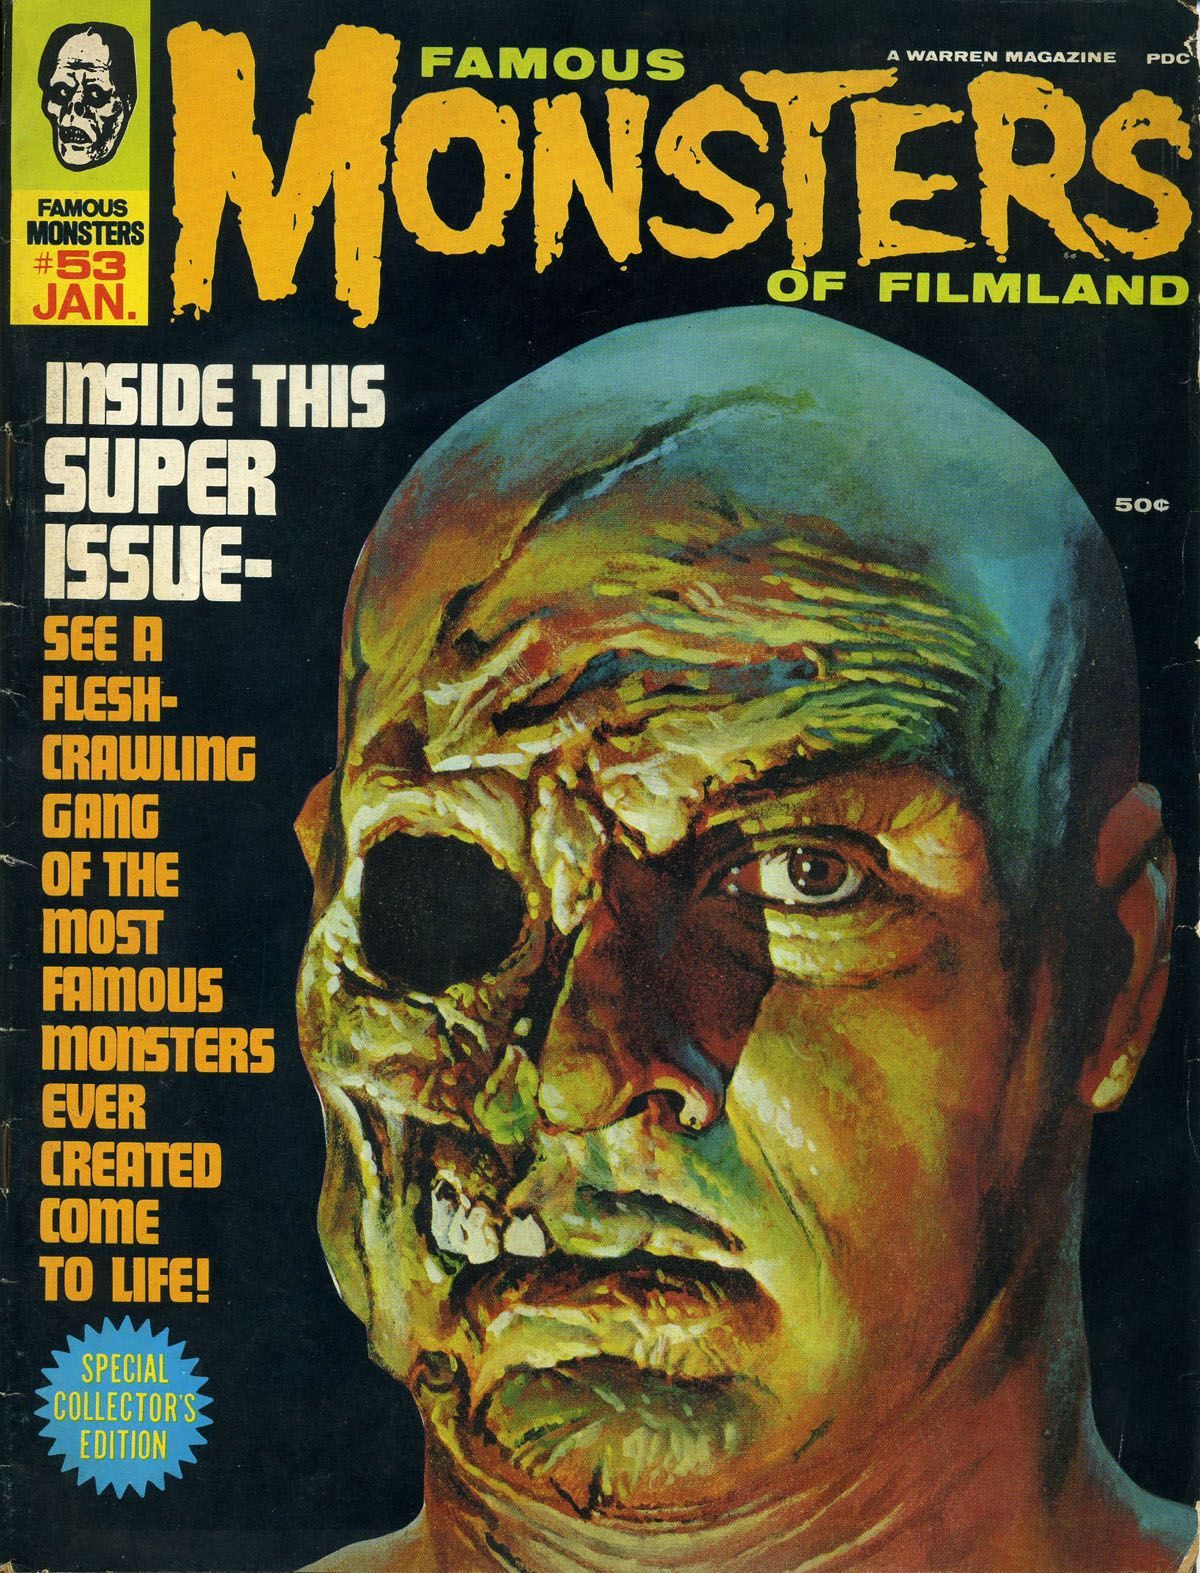 Famous Monsters of Filmland, magazine, horror films, 1960s